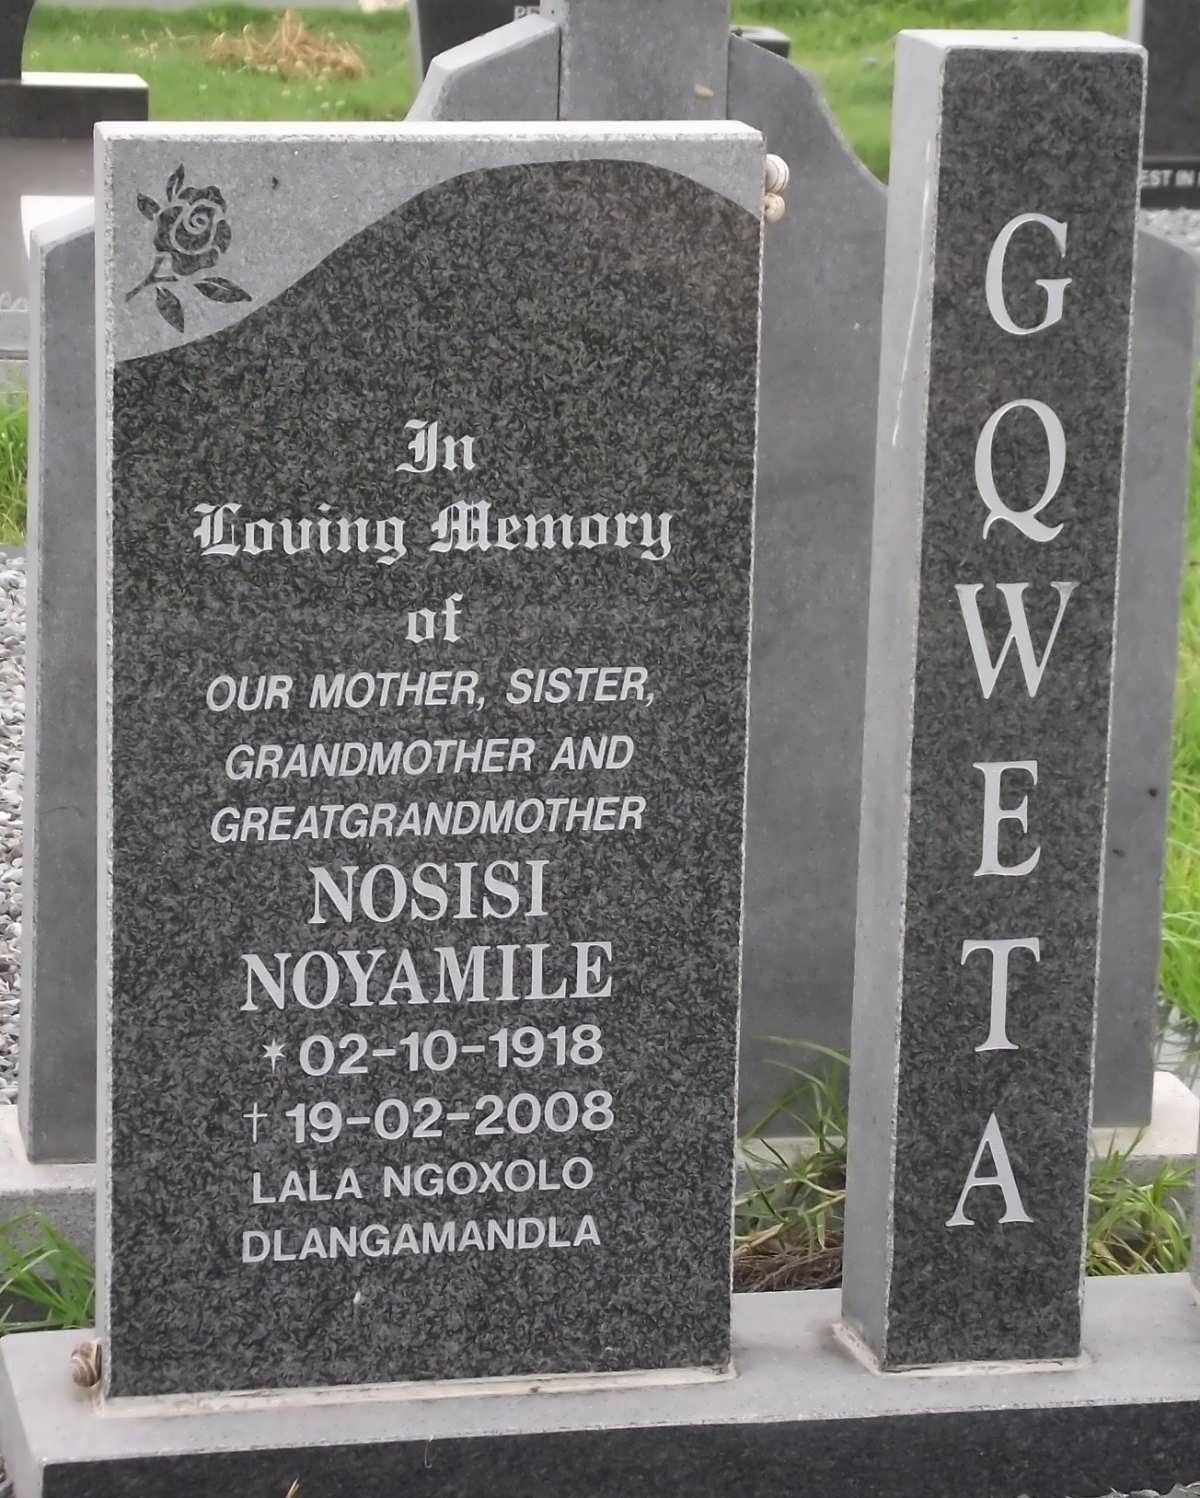 GQWETA Nosisi Nayamile 1918-2008